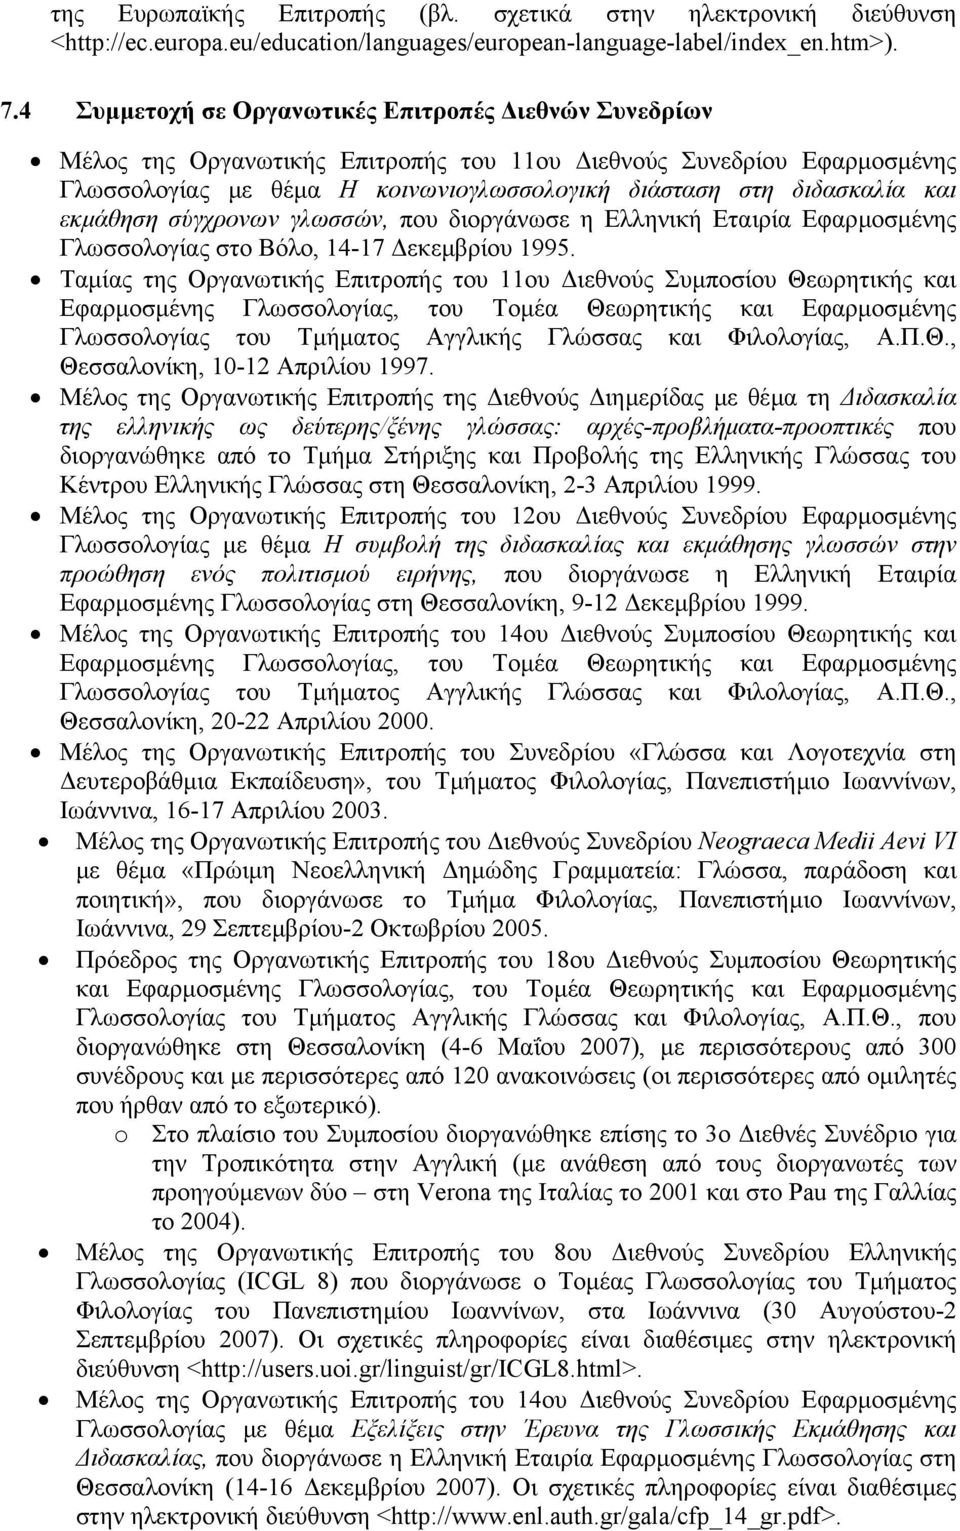 εκµάθηση σύγχρονων γλωσσών, που διοργάνωσε η Ελληνική Εταιρία Εφαρµοσµένης Γλωσσολογίας στο Βόλο, 14-17 εκεµβρίου 1995.